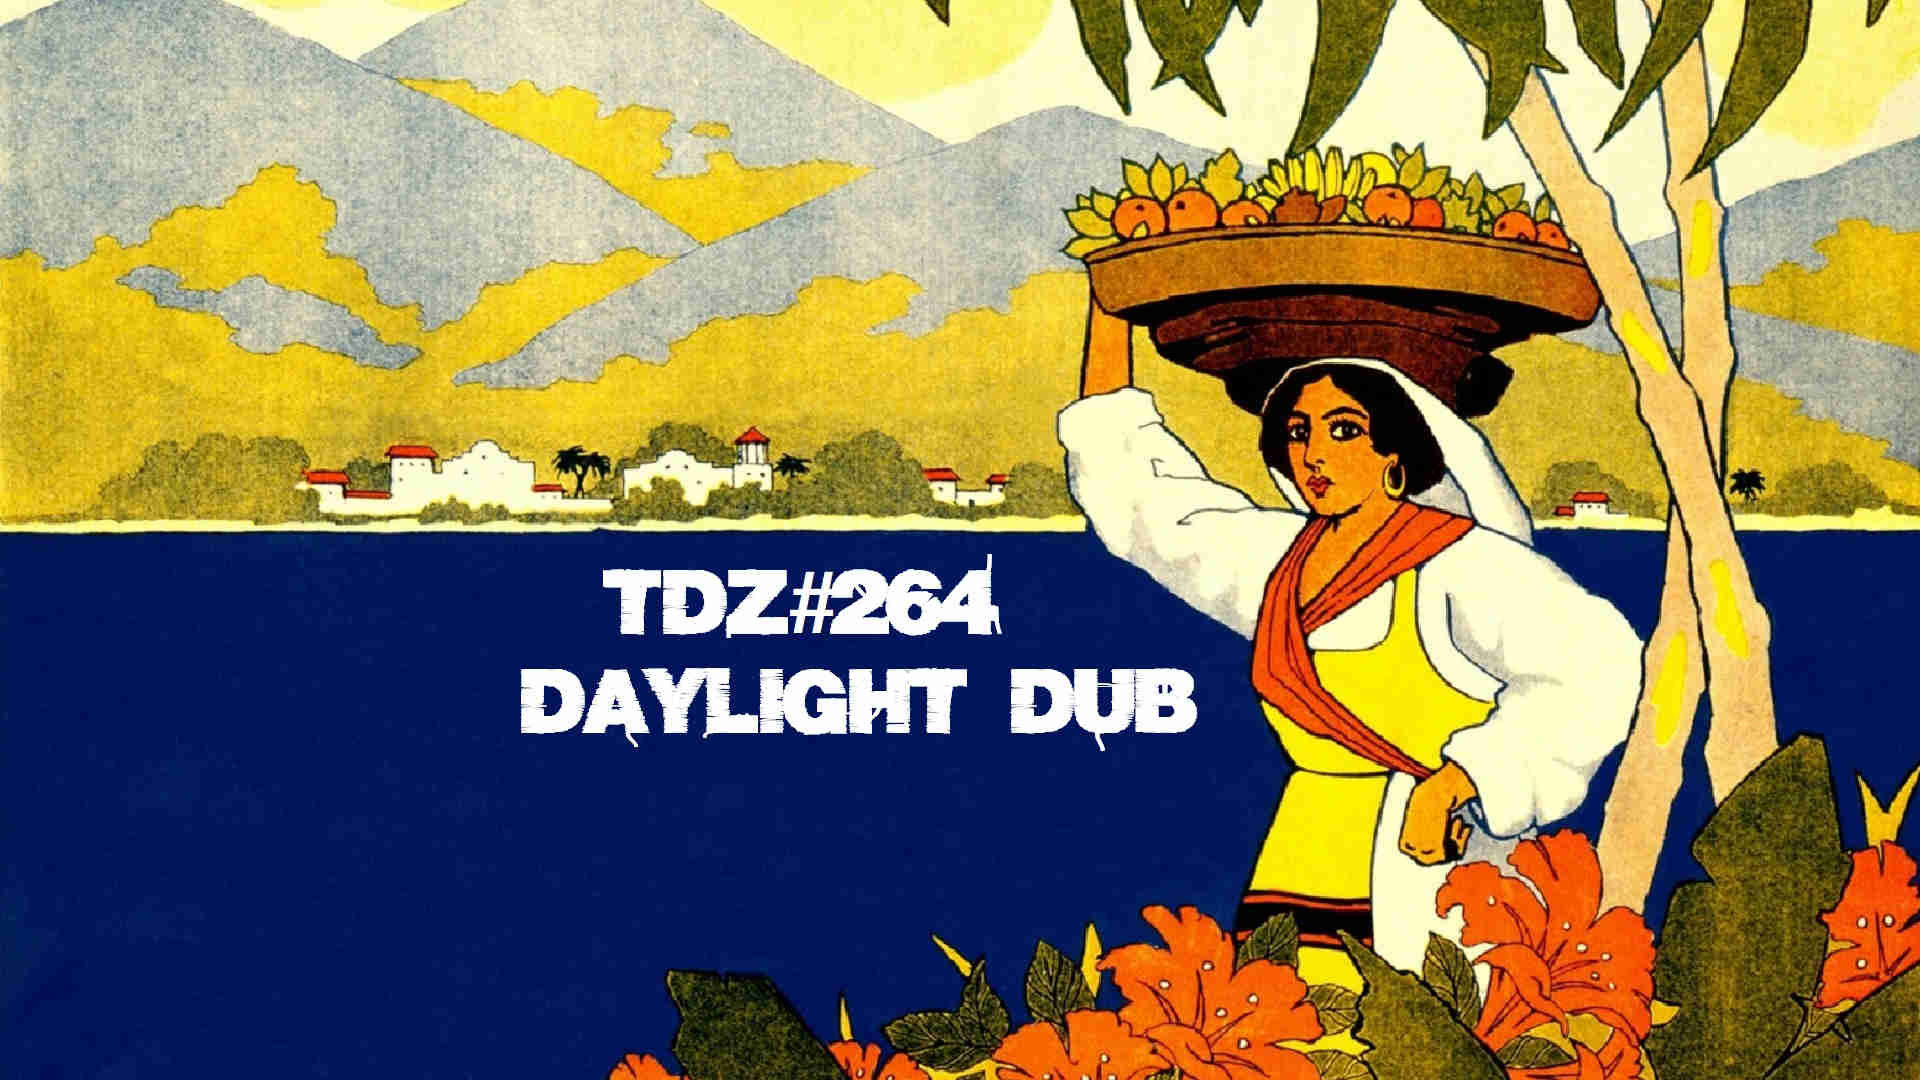 TDZ#264... Daylight Dub...